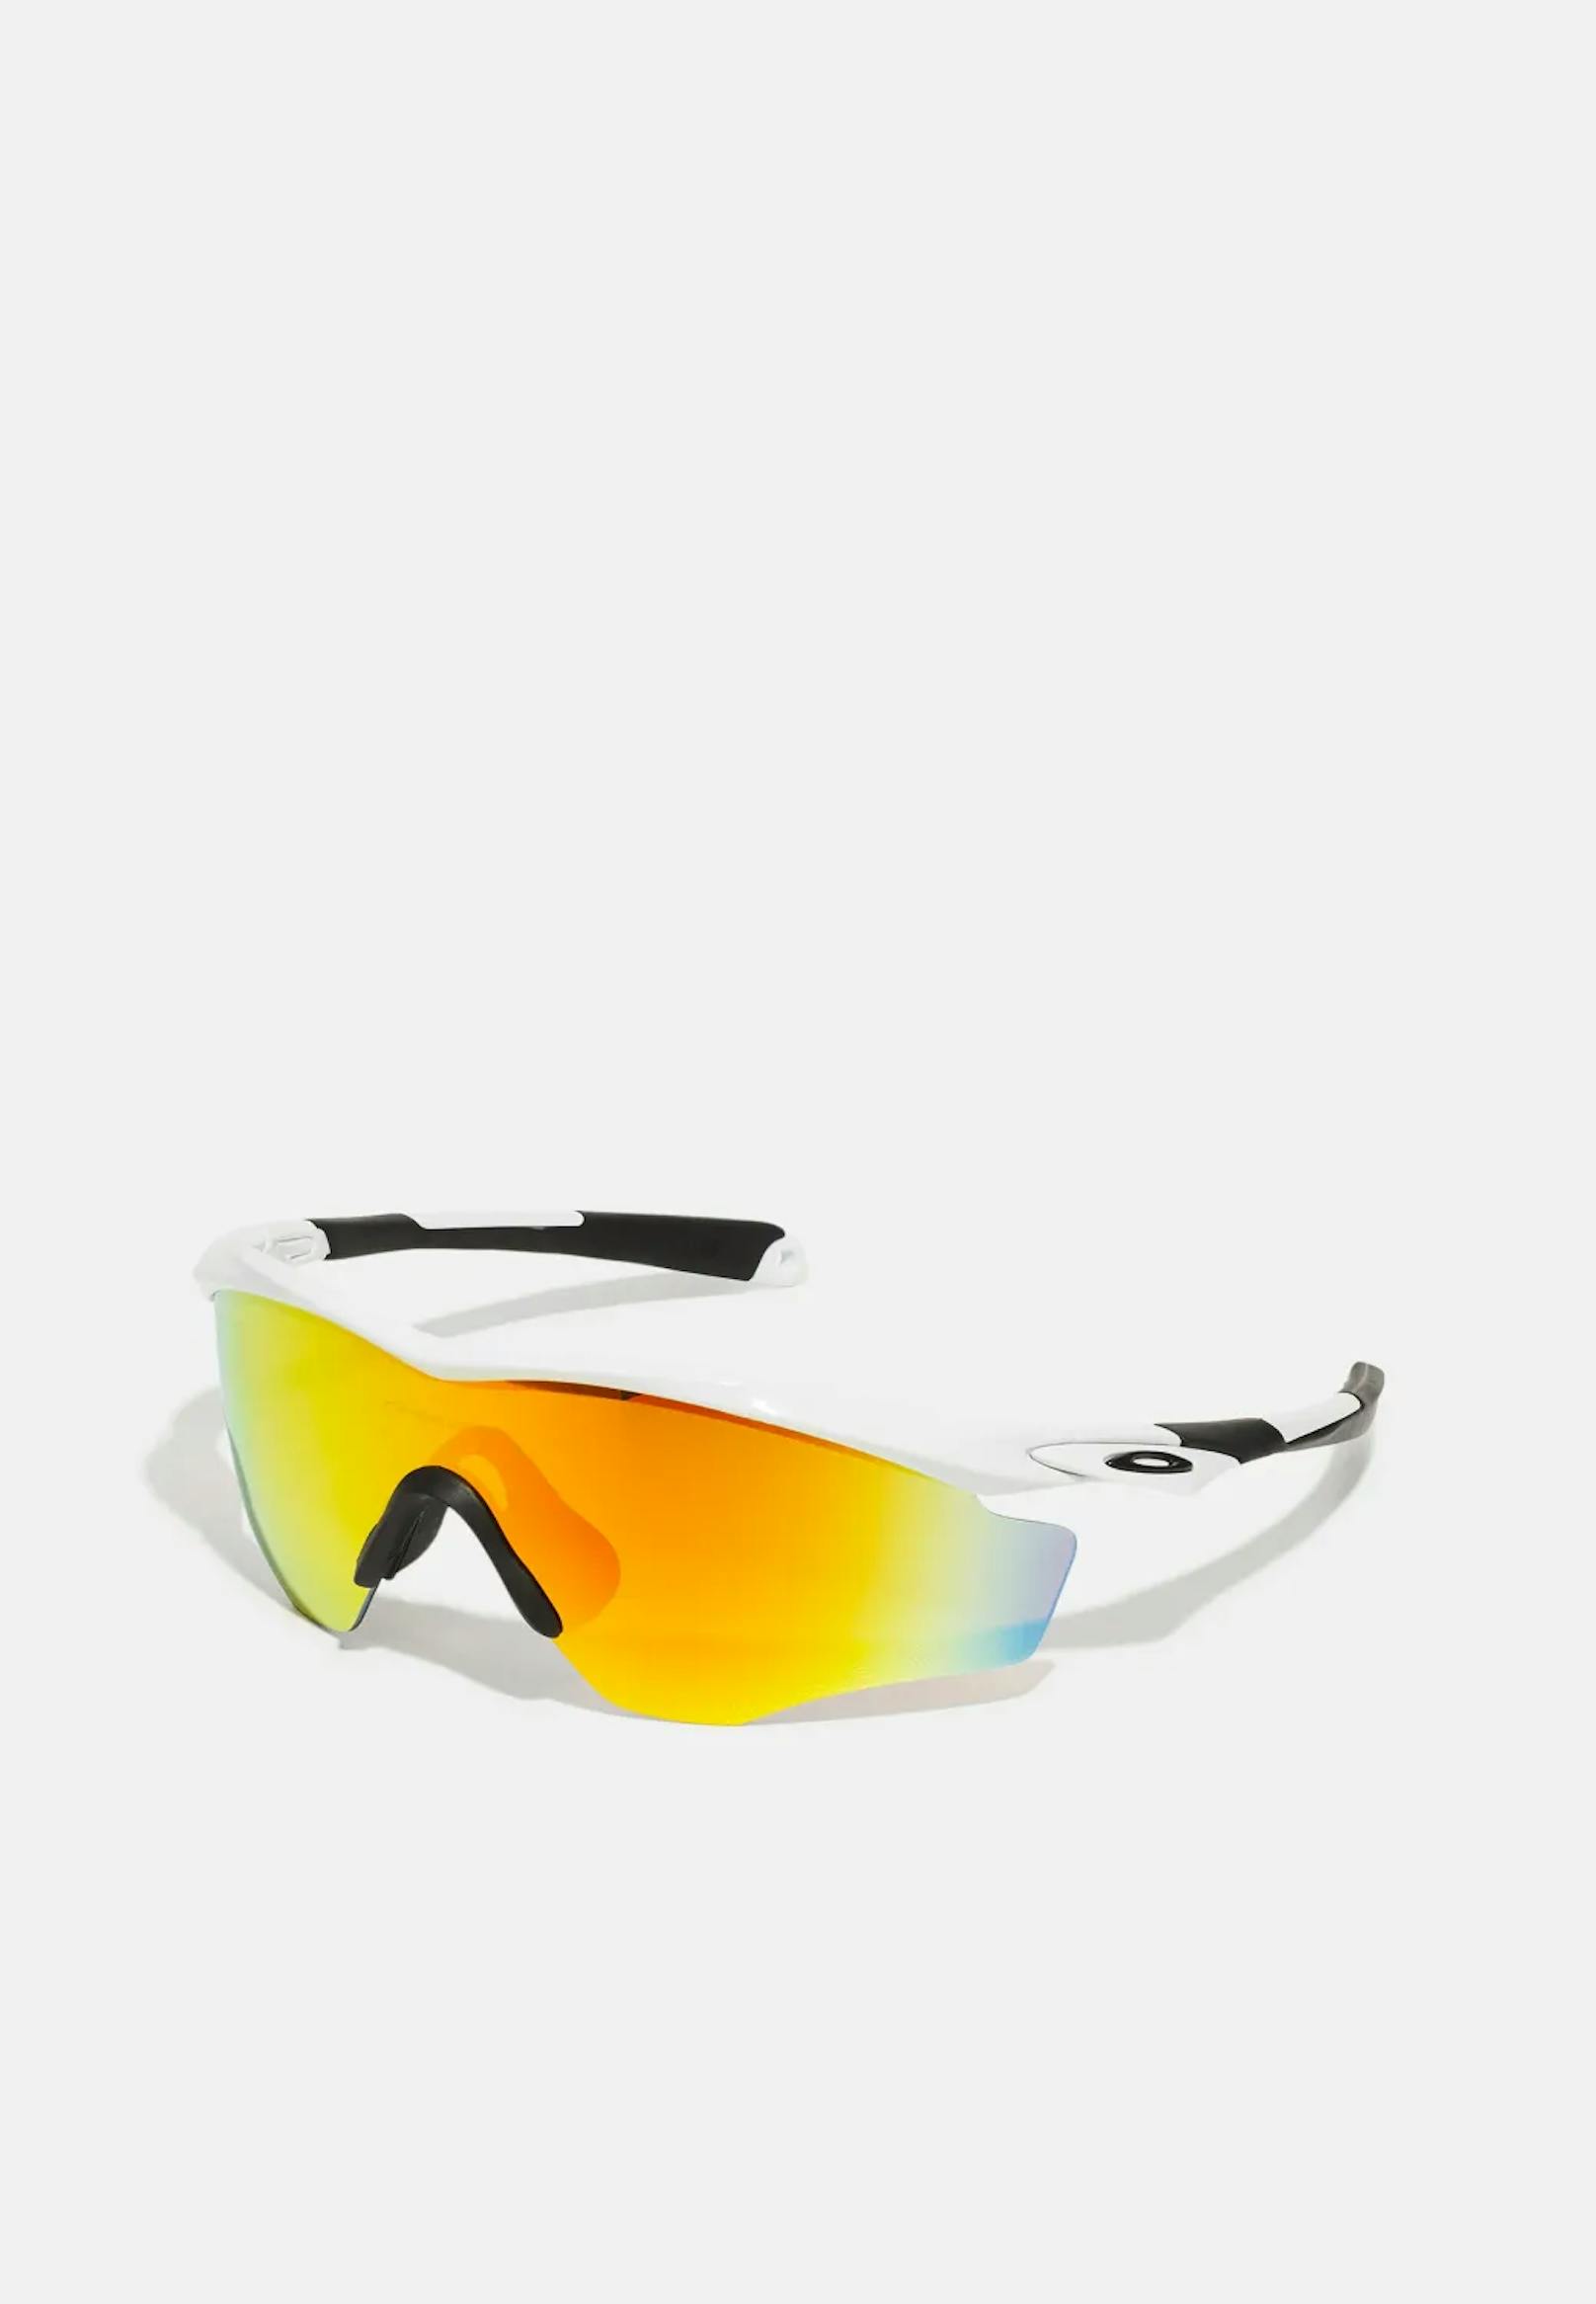 FRAME UNISEX - Sportbrille von Oakley: <a target="_blank" href="https://www.zalando.at/oakley-frame-unisex-sportbrille-polished-whitefire-iridium-oa344e0aa-a11.html"><strong>Zu kaufen im Online-Shop von Zalando</strong></a>.